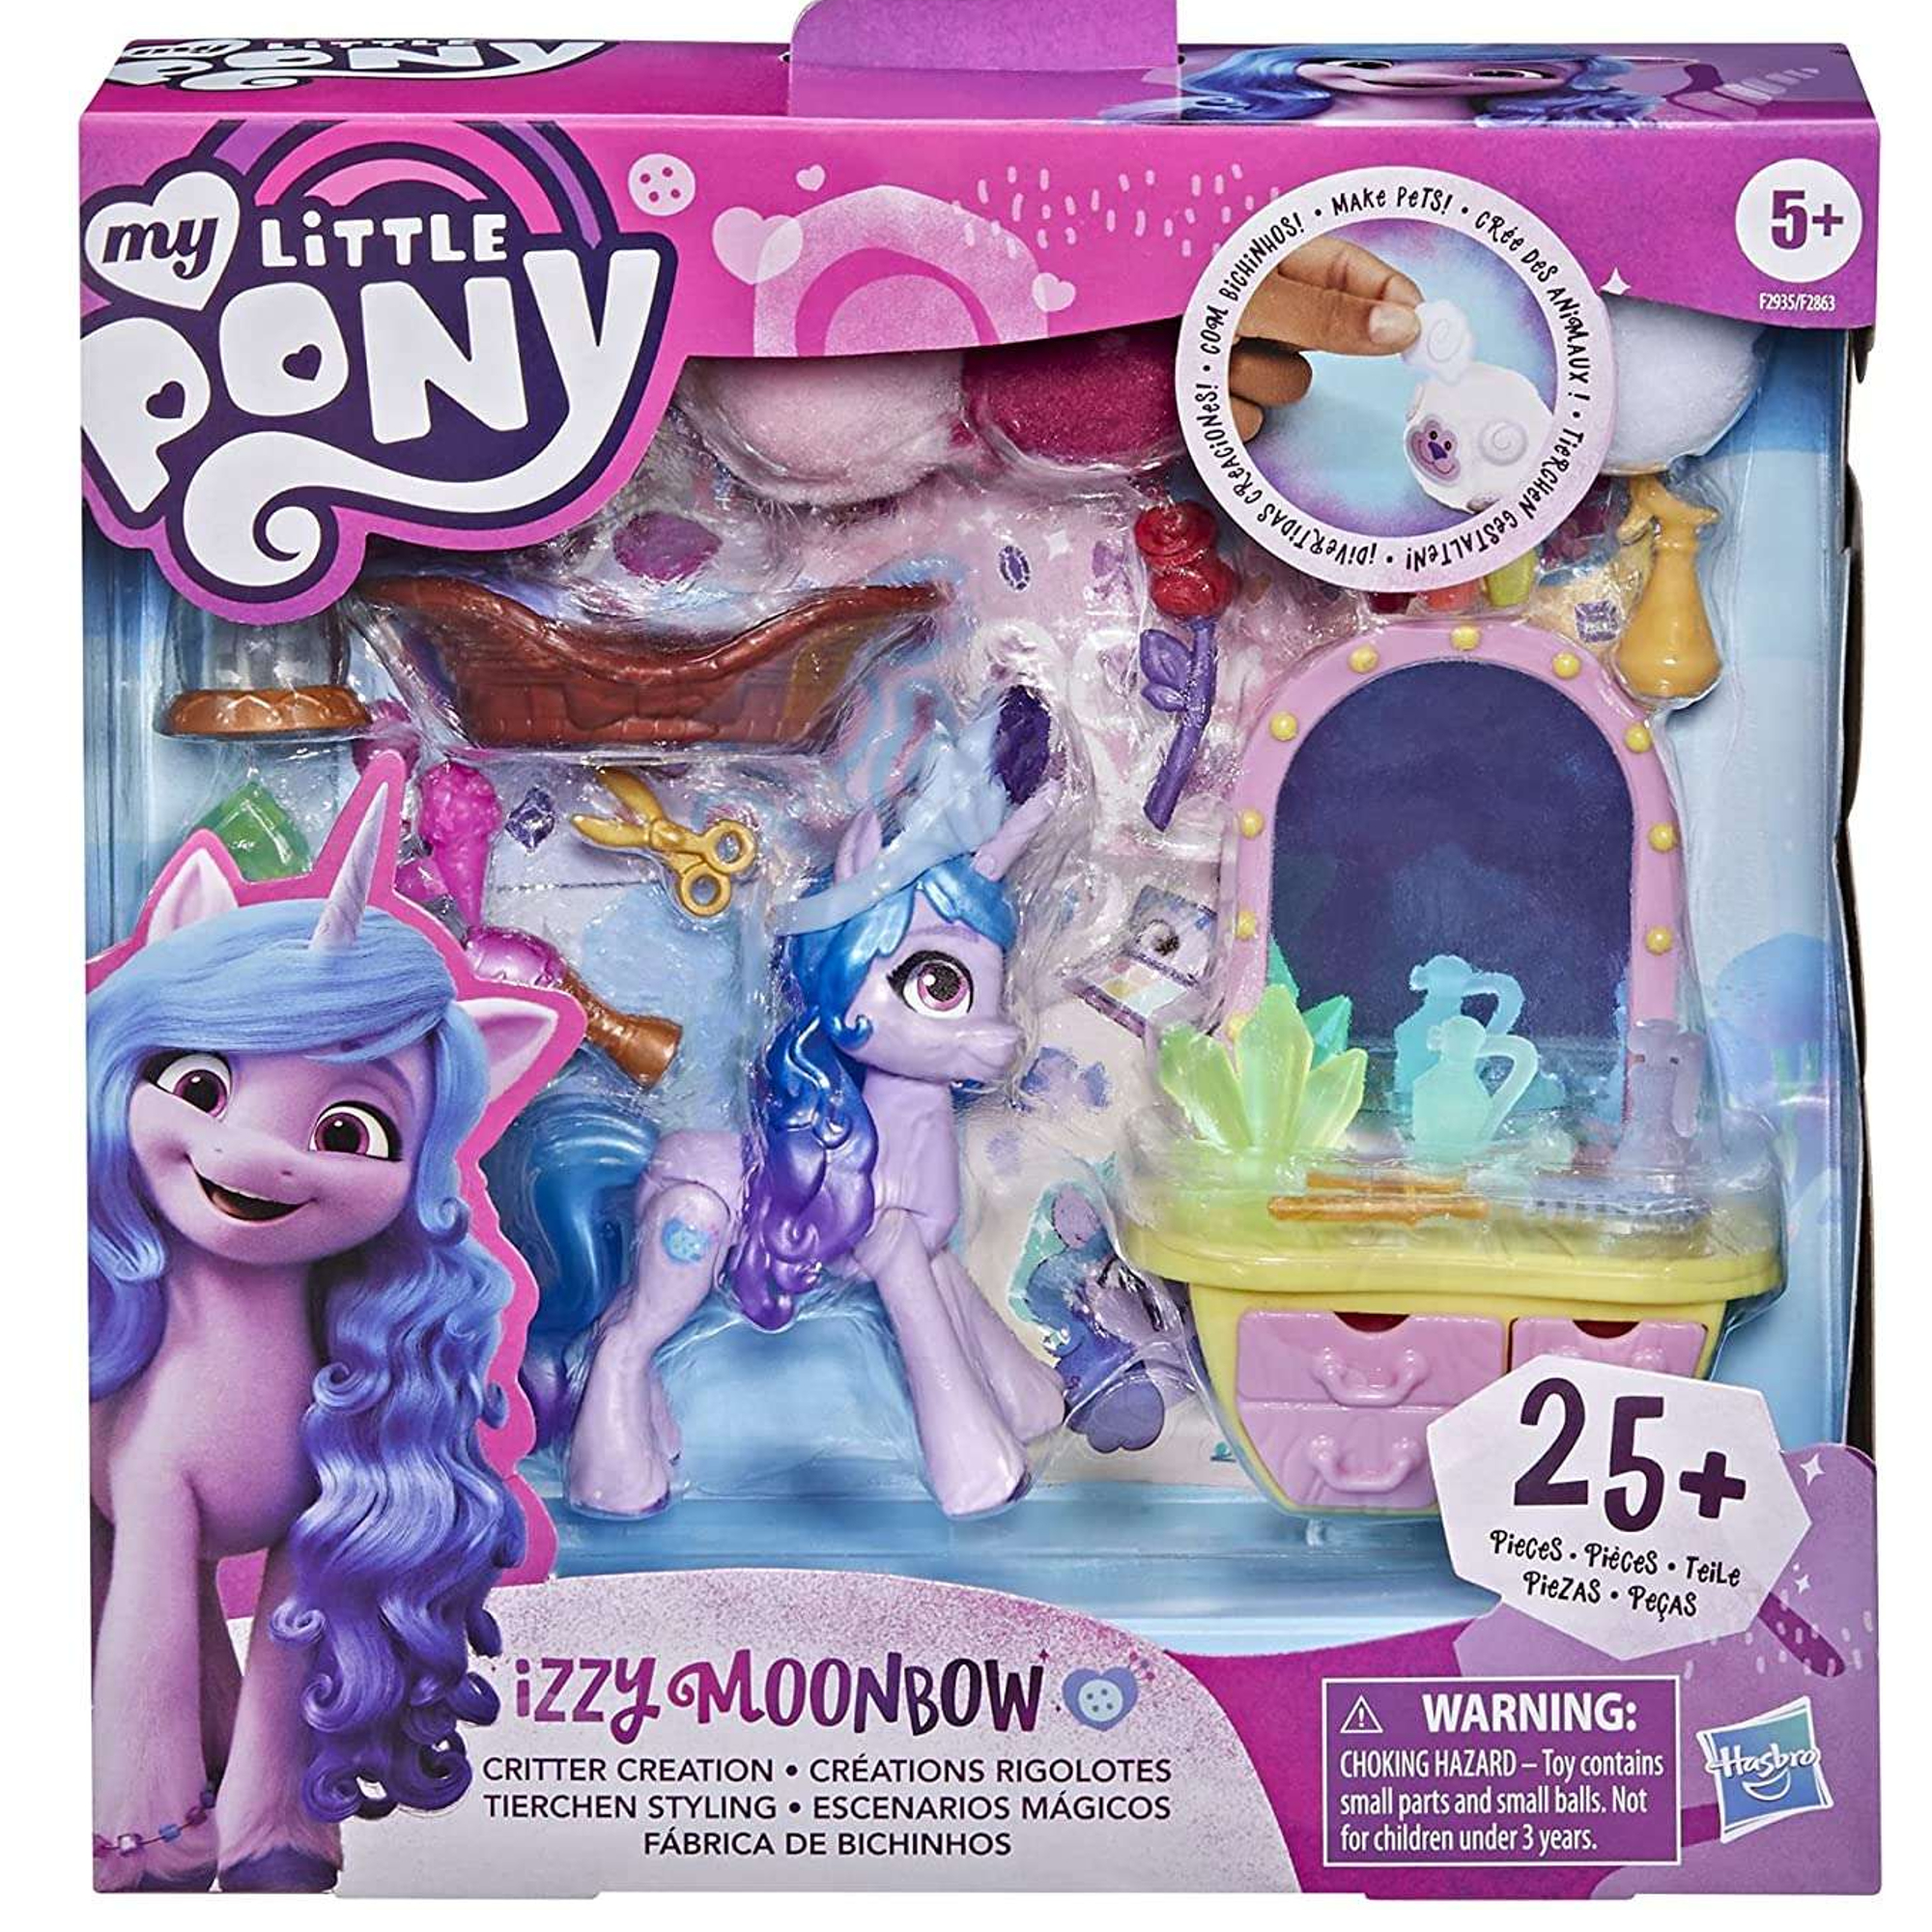 My Little Pony Salon kosmetyczny zestaw z figurk± Izzy Moonbow